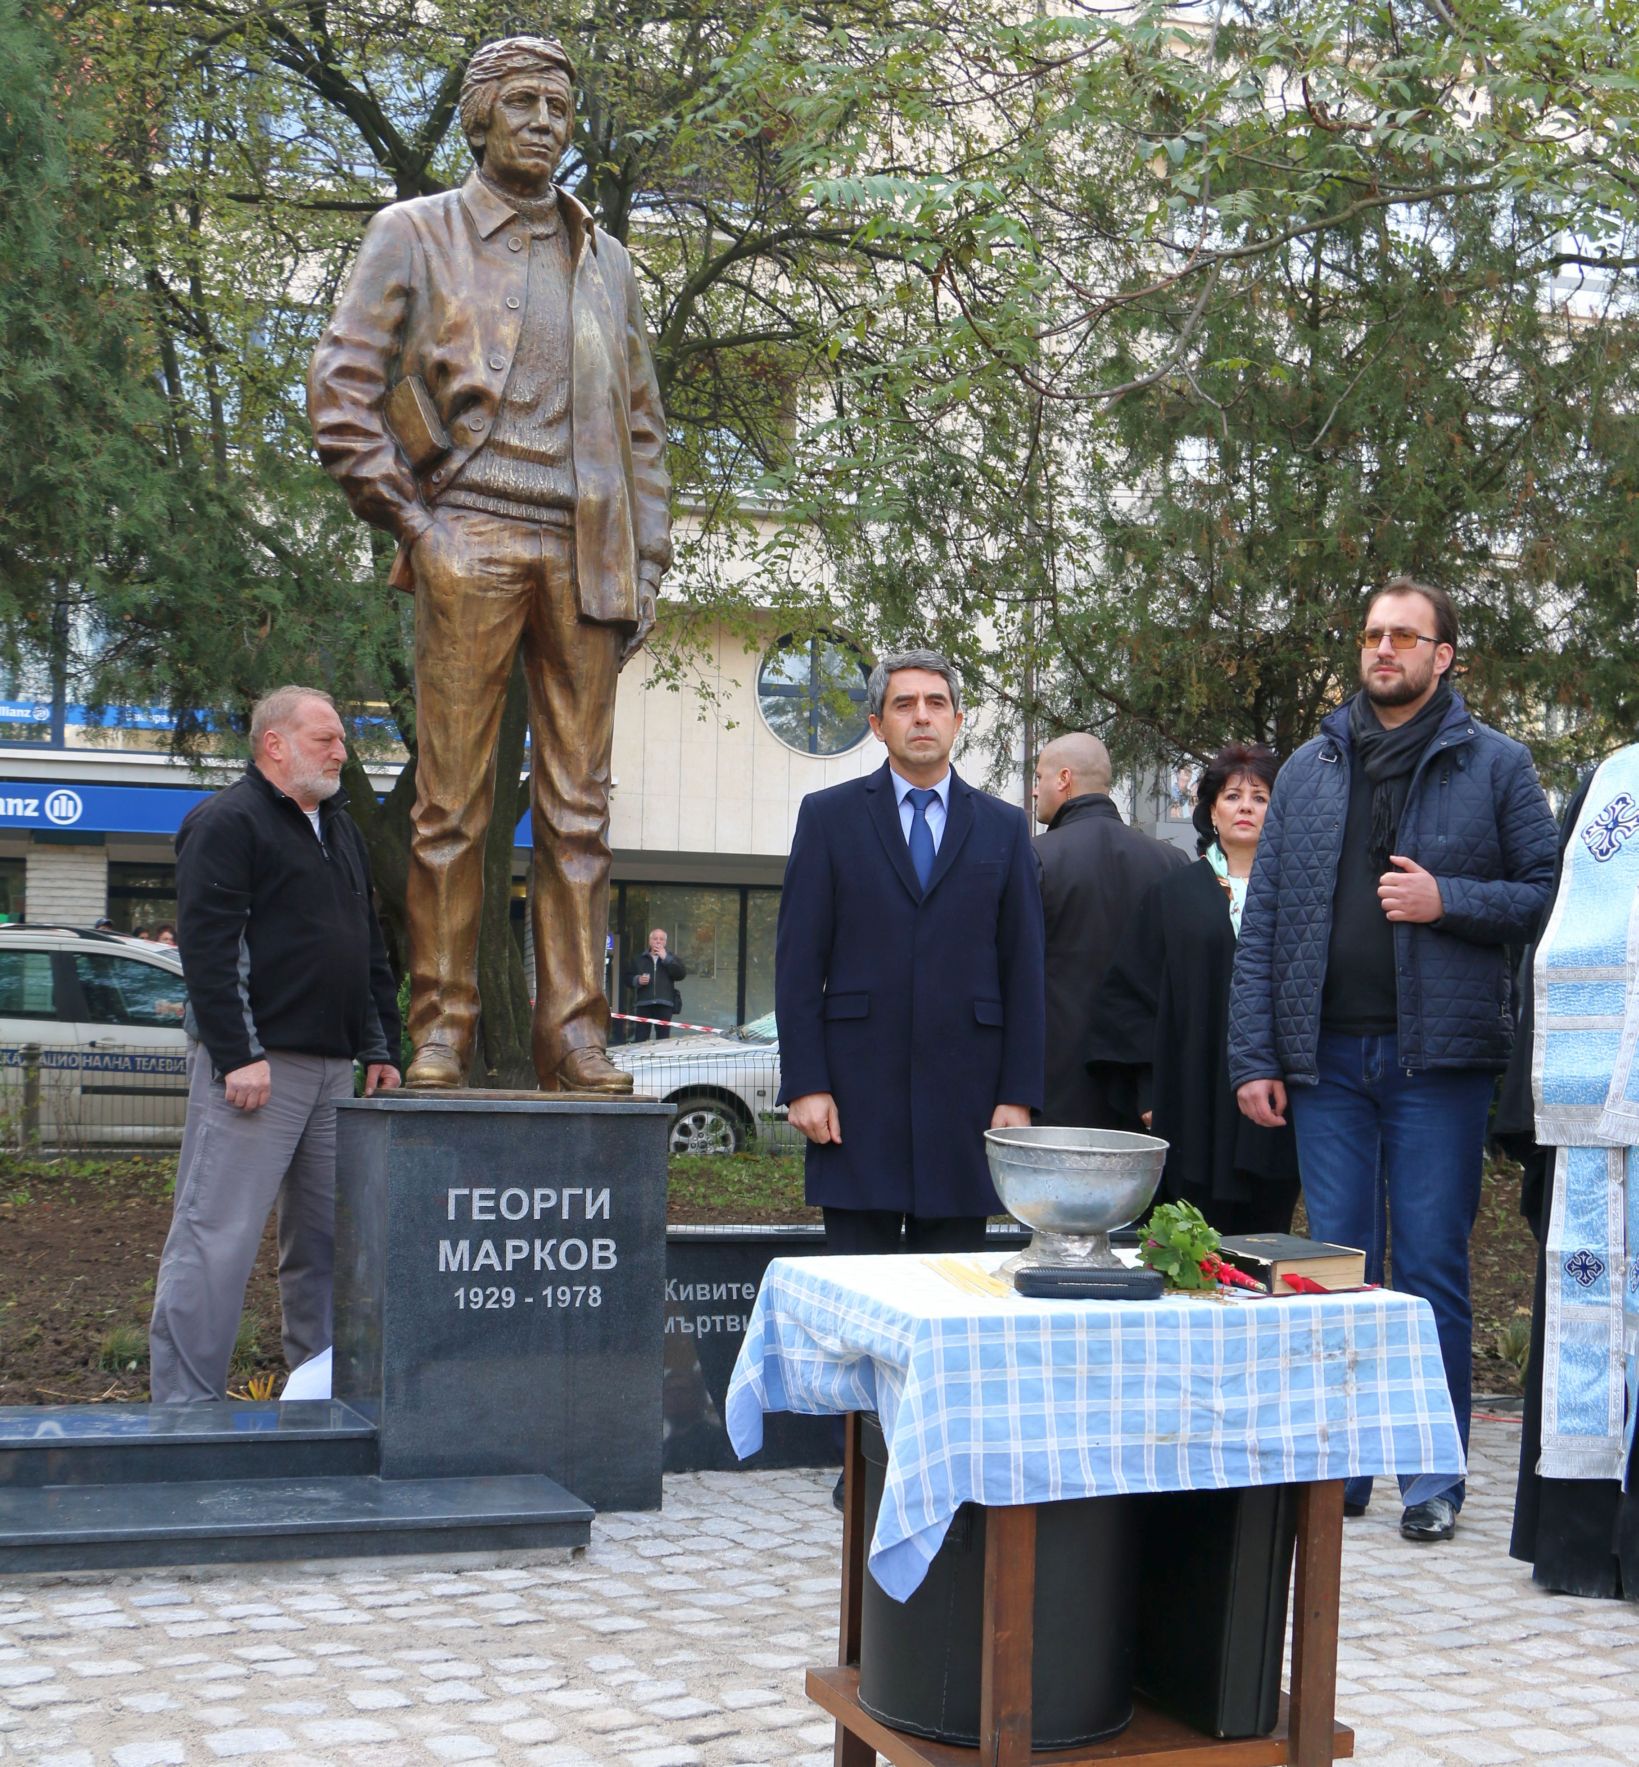 Паметникът на Георги Марков в София бе открит на 11.11.2014 г. на площад ”Журналист”